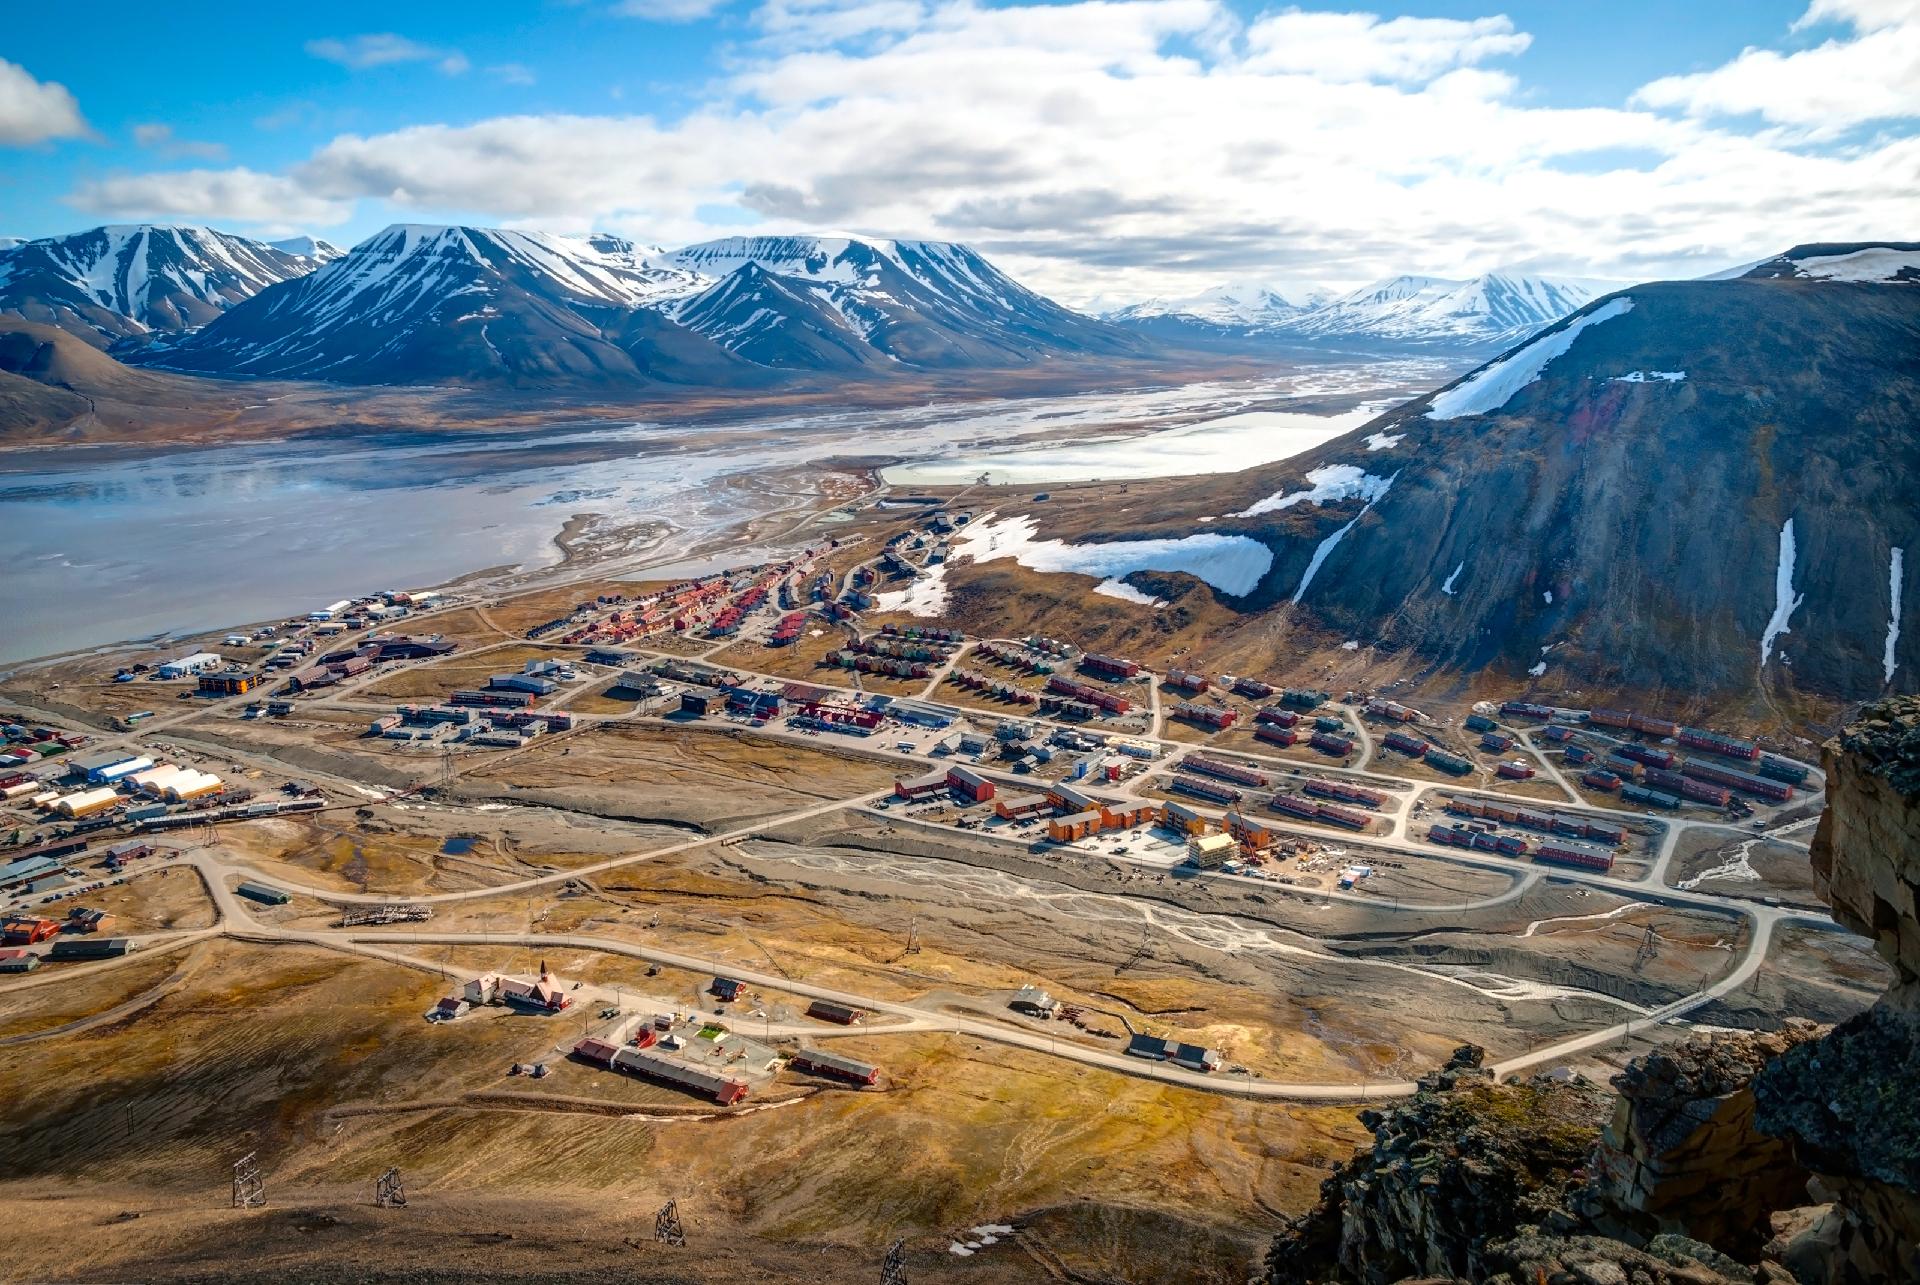 Vista aerea de Longyearbyen en Svalbard